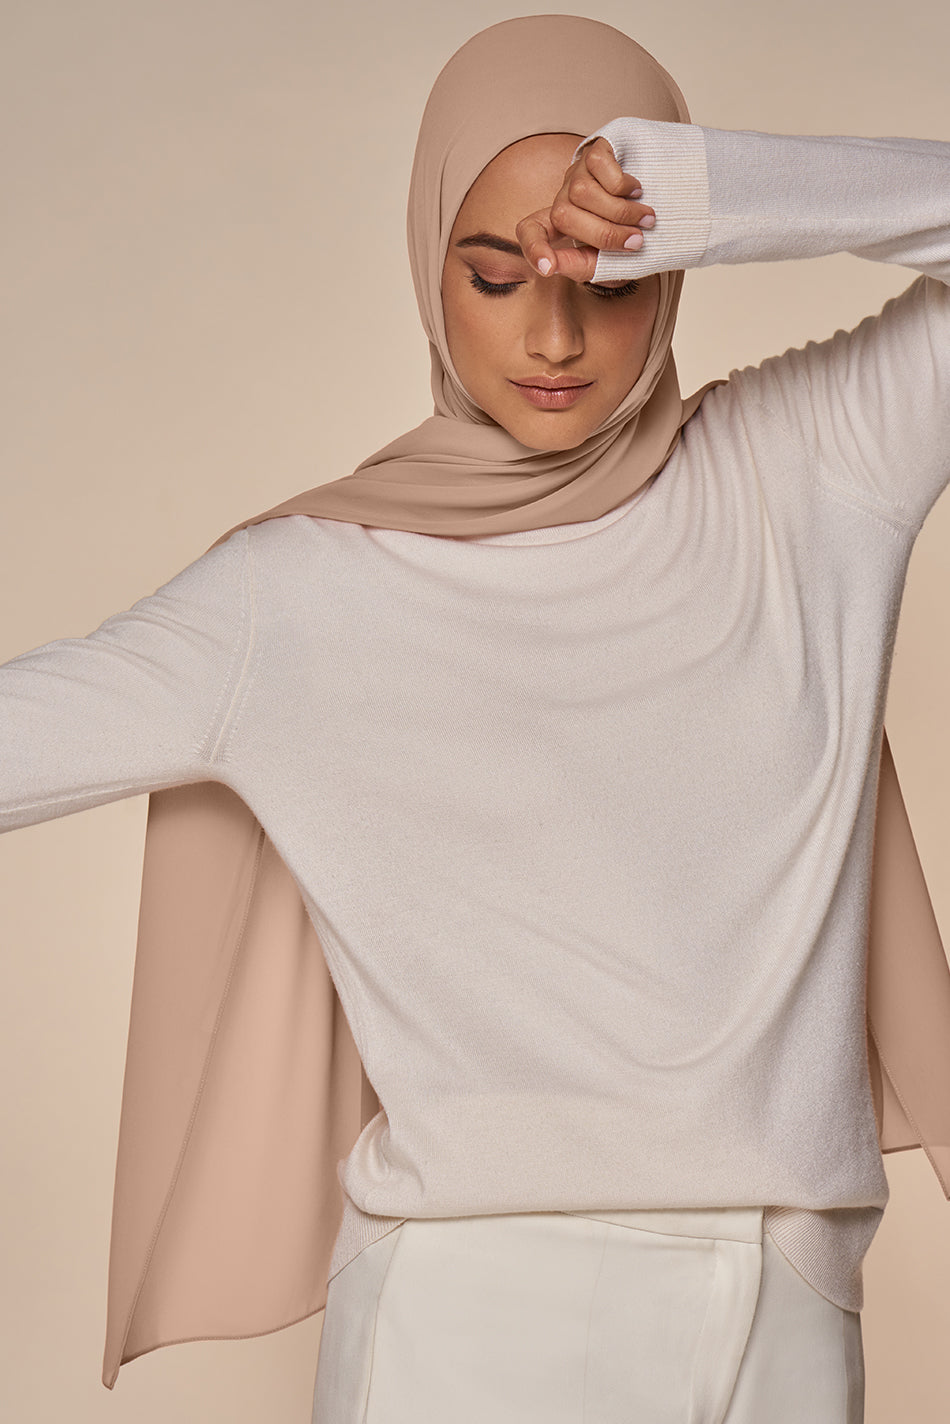 White Chiffon Hijab Square 40 x 40 / Winter White / Chiffon